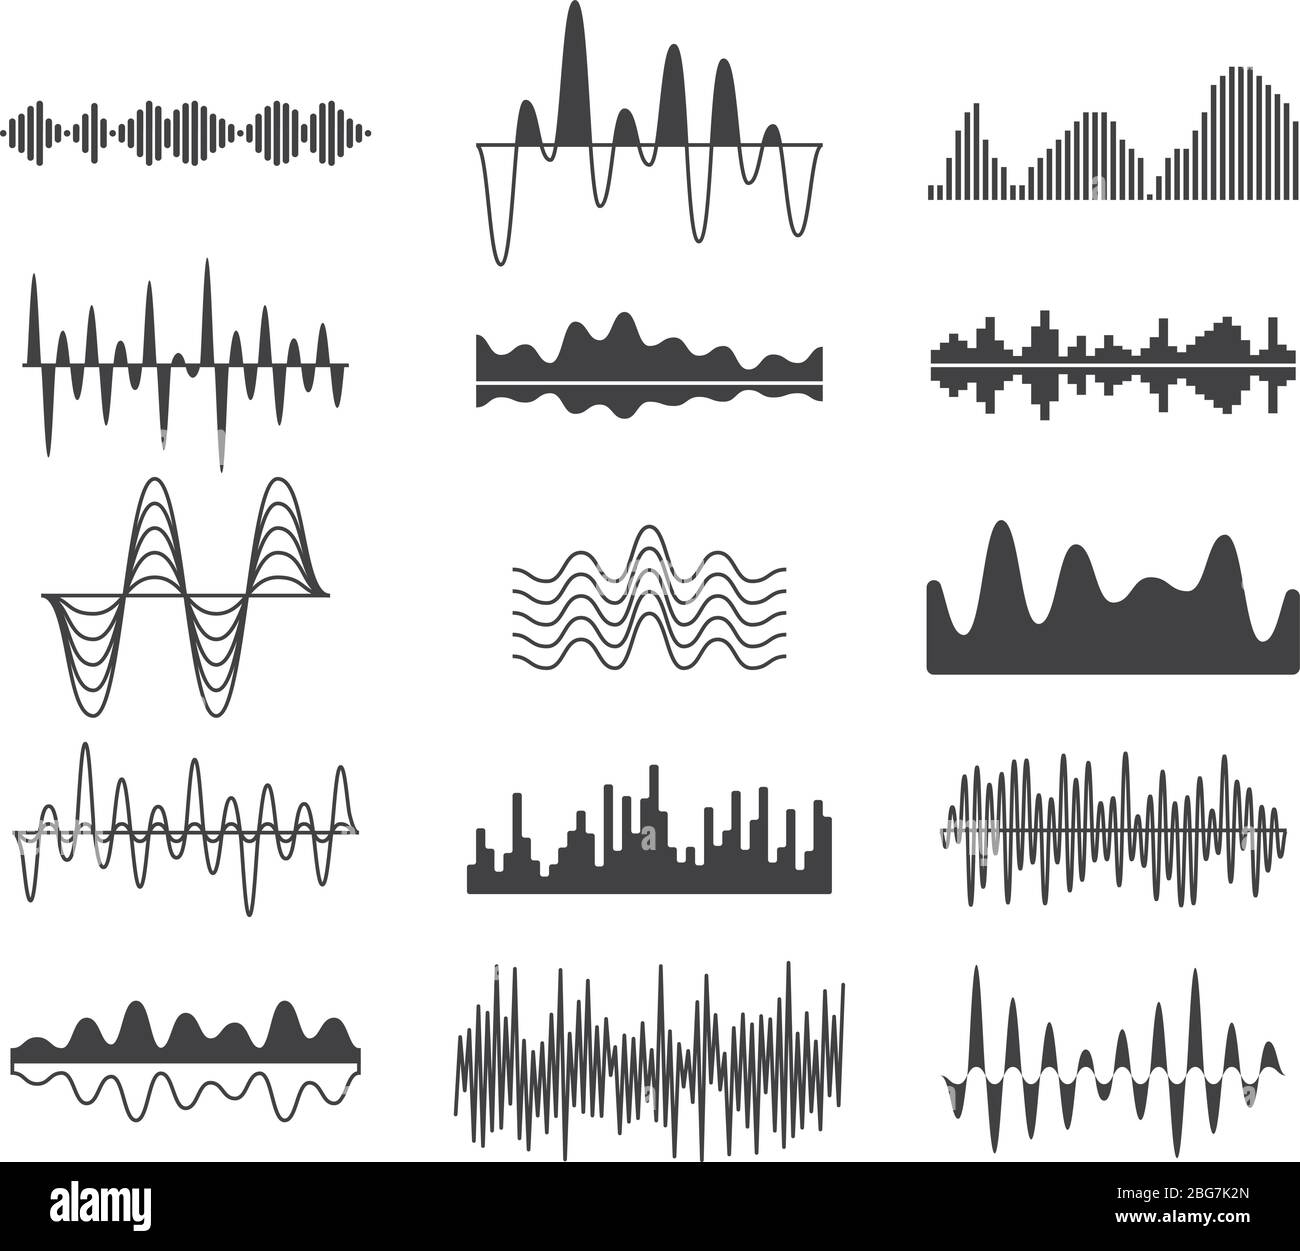 Ondas de frecuencia de sonido. Símbolos de señal analógica curva. Se forma  el ecualizador de música de pista de audio, se establece el vector de  señales de ondas sonoras. Ecualización electrónica de